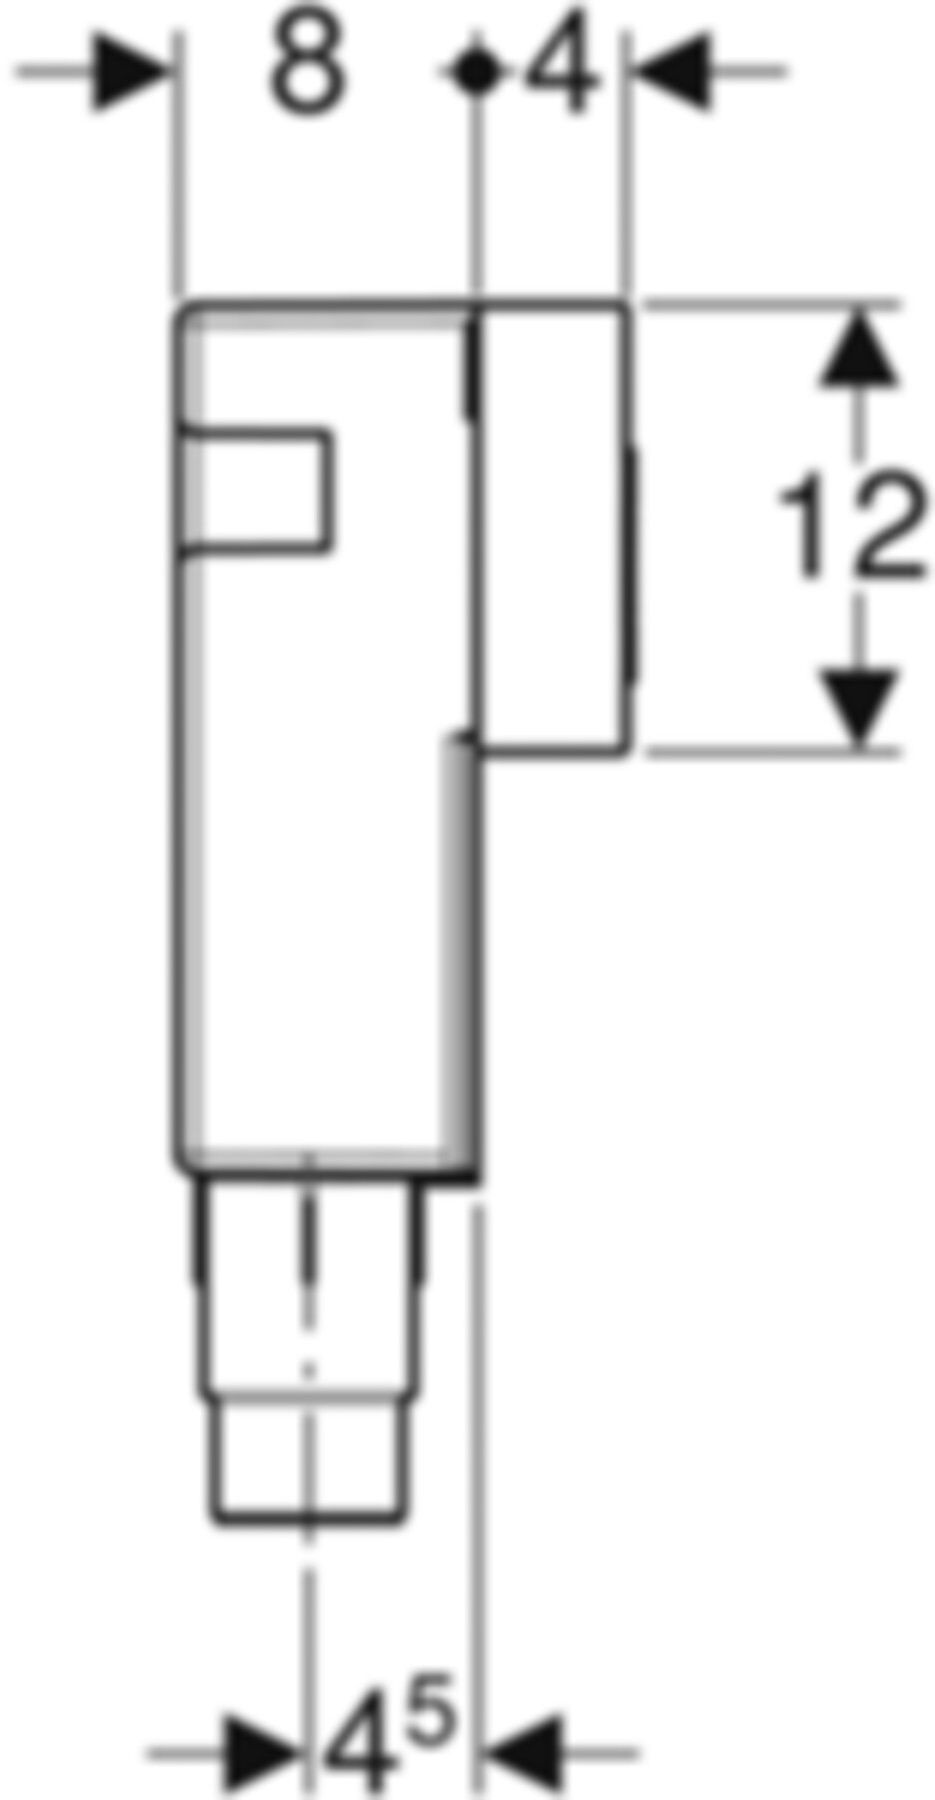 Rohbau-Set Massivbau für Unterputz-Sifon 151.125.00.1 50-56mm - Geberit-Sifon + Apparateanschlüsse